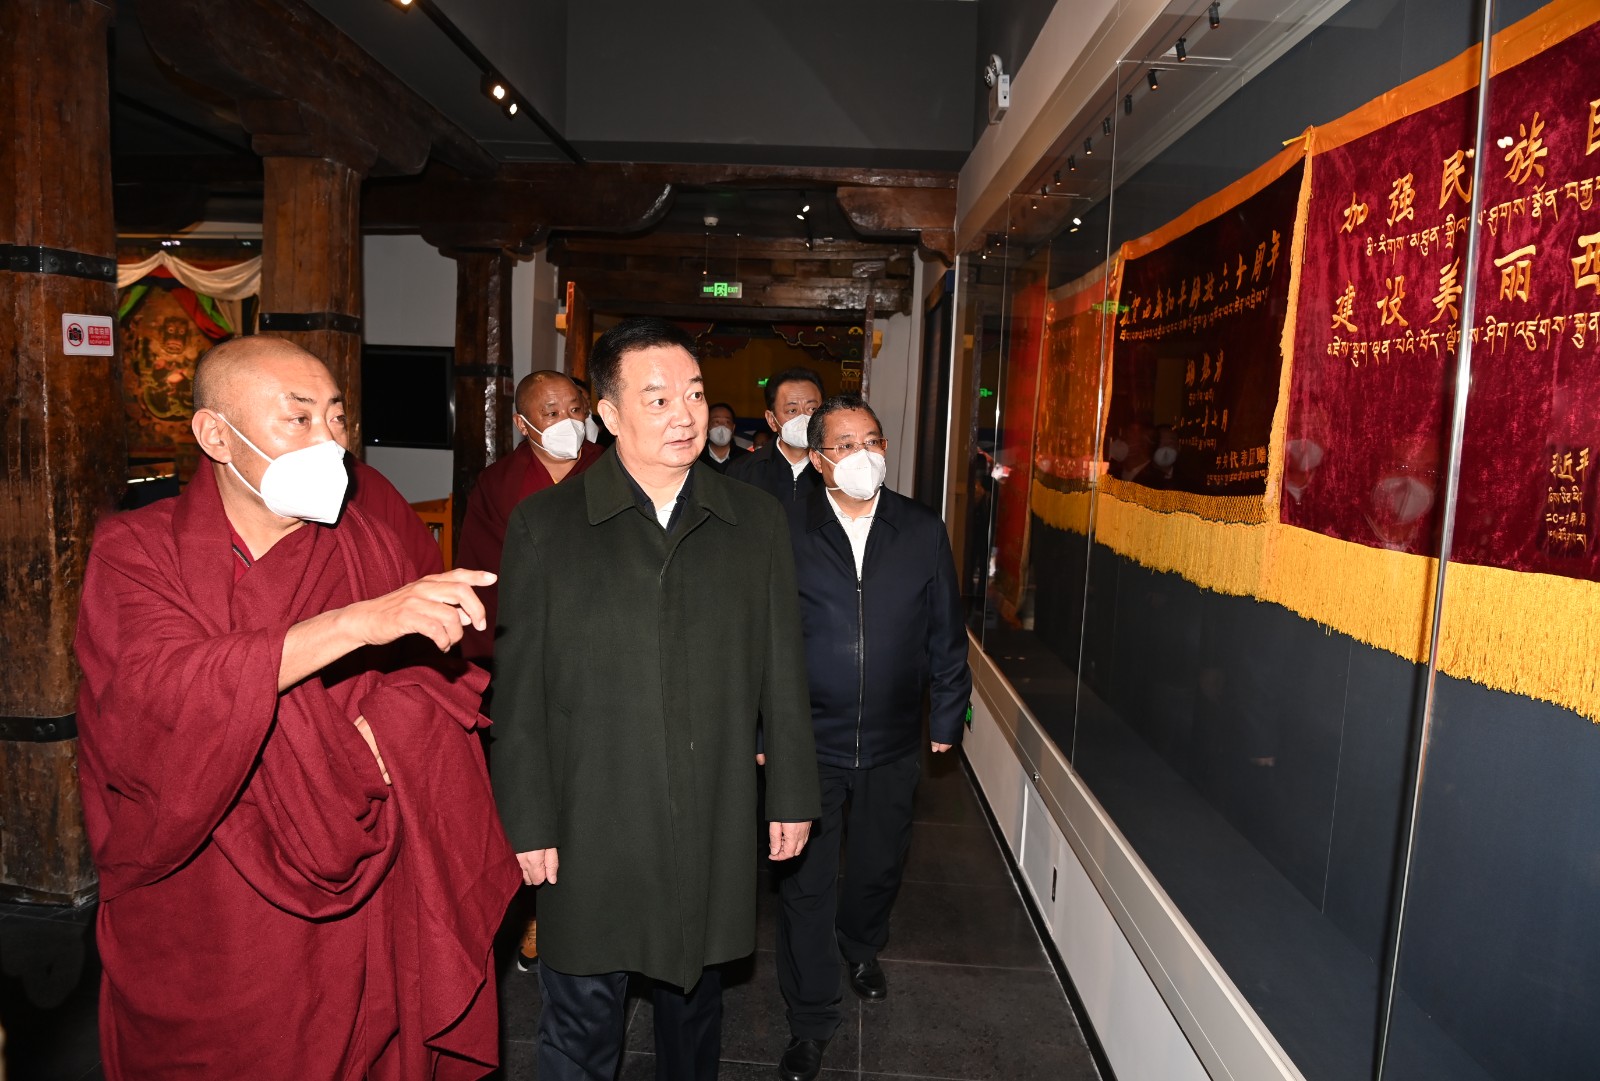 王君正在拉萨市调研督导时强调 团结一心 共同奋斗 再接再厉 努力开创社会主义现代化新西藏建设新局面